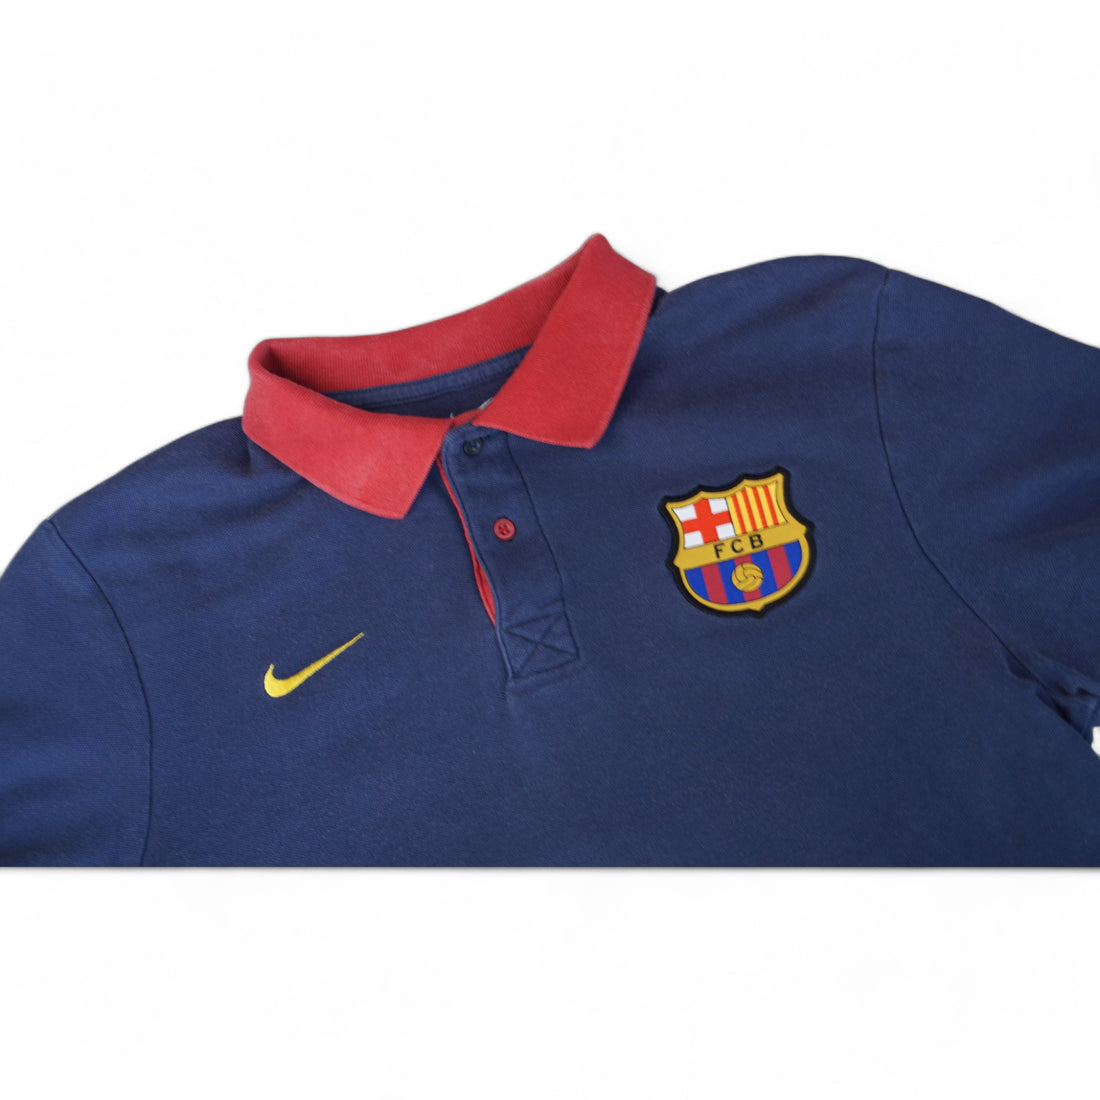 Nike Vintage Barca Poloshirt (M)